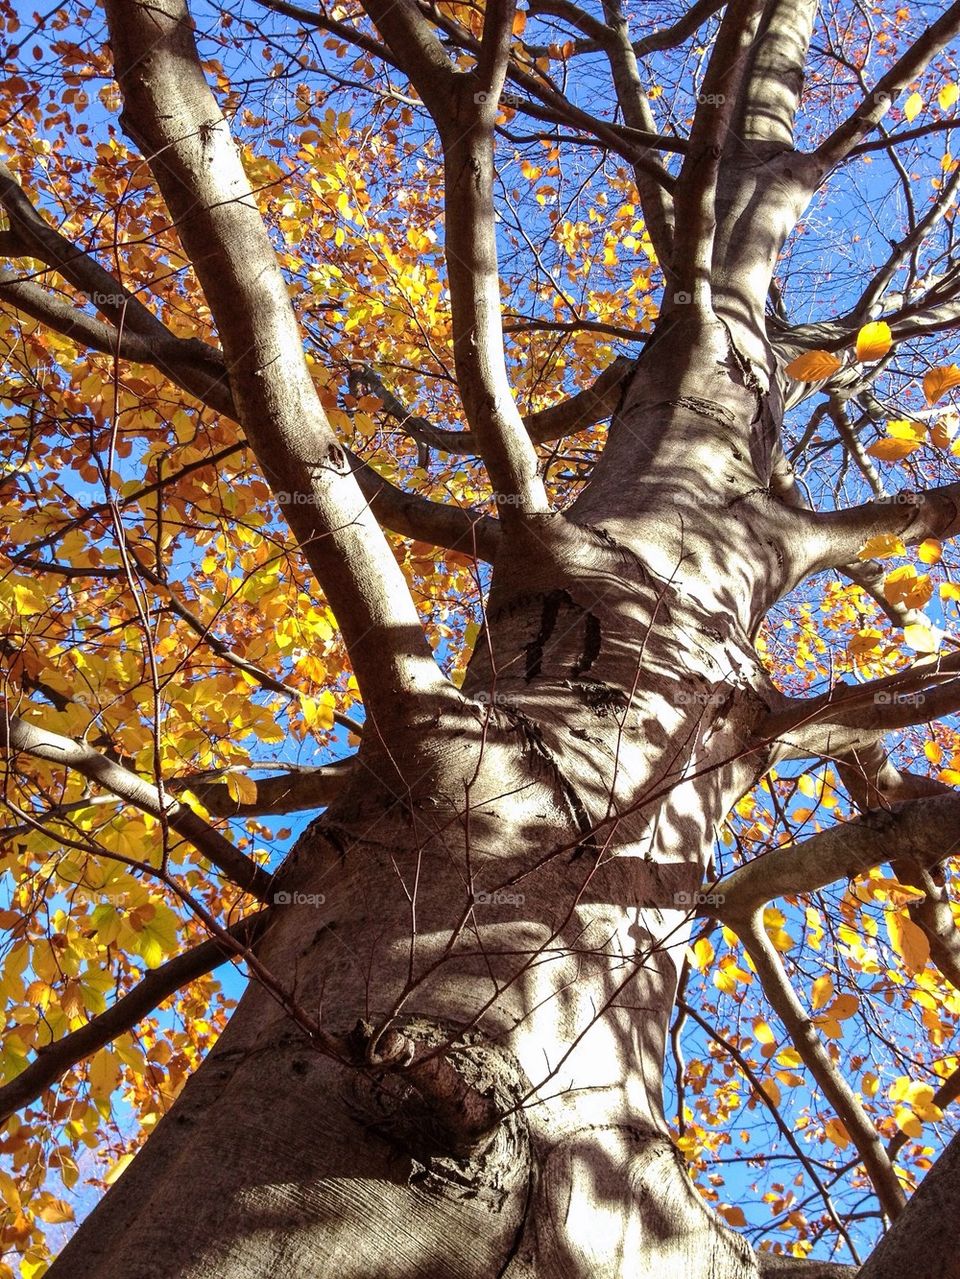 Autumn tree - looking up